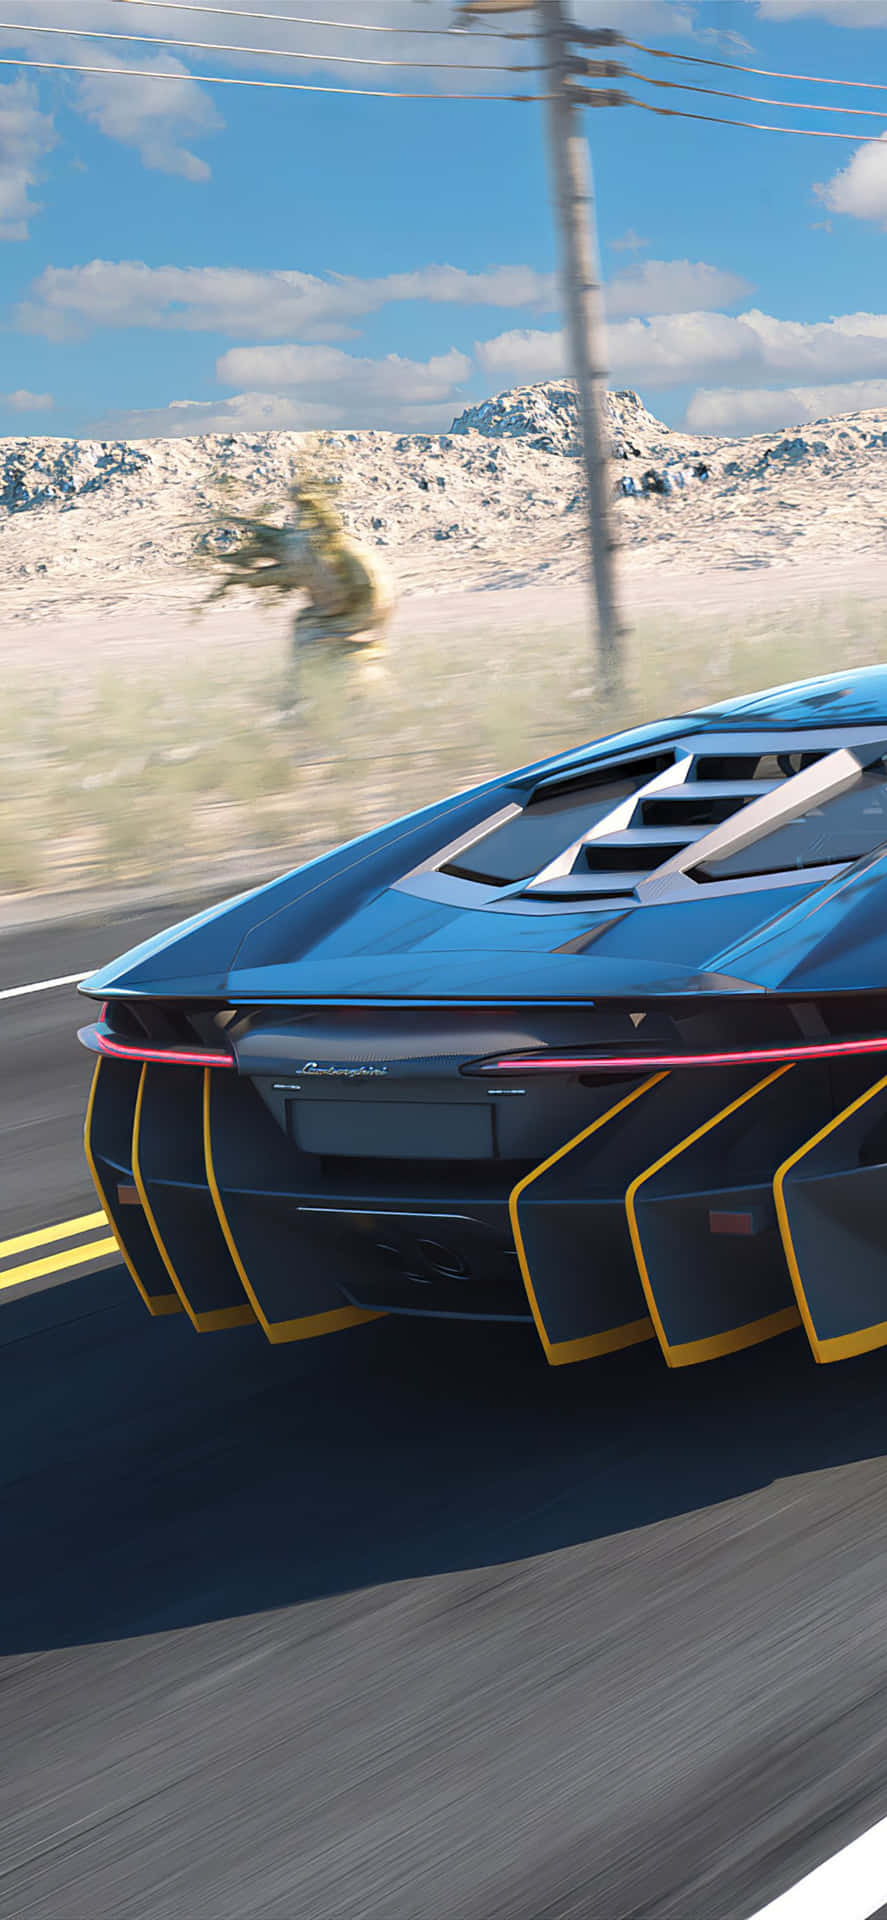 Ellujo Y El Rendimiento Se Unen En Este Lamborghini Azul Fondo de pantalla